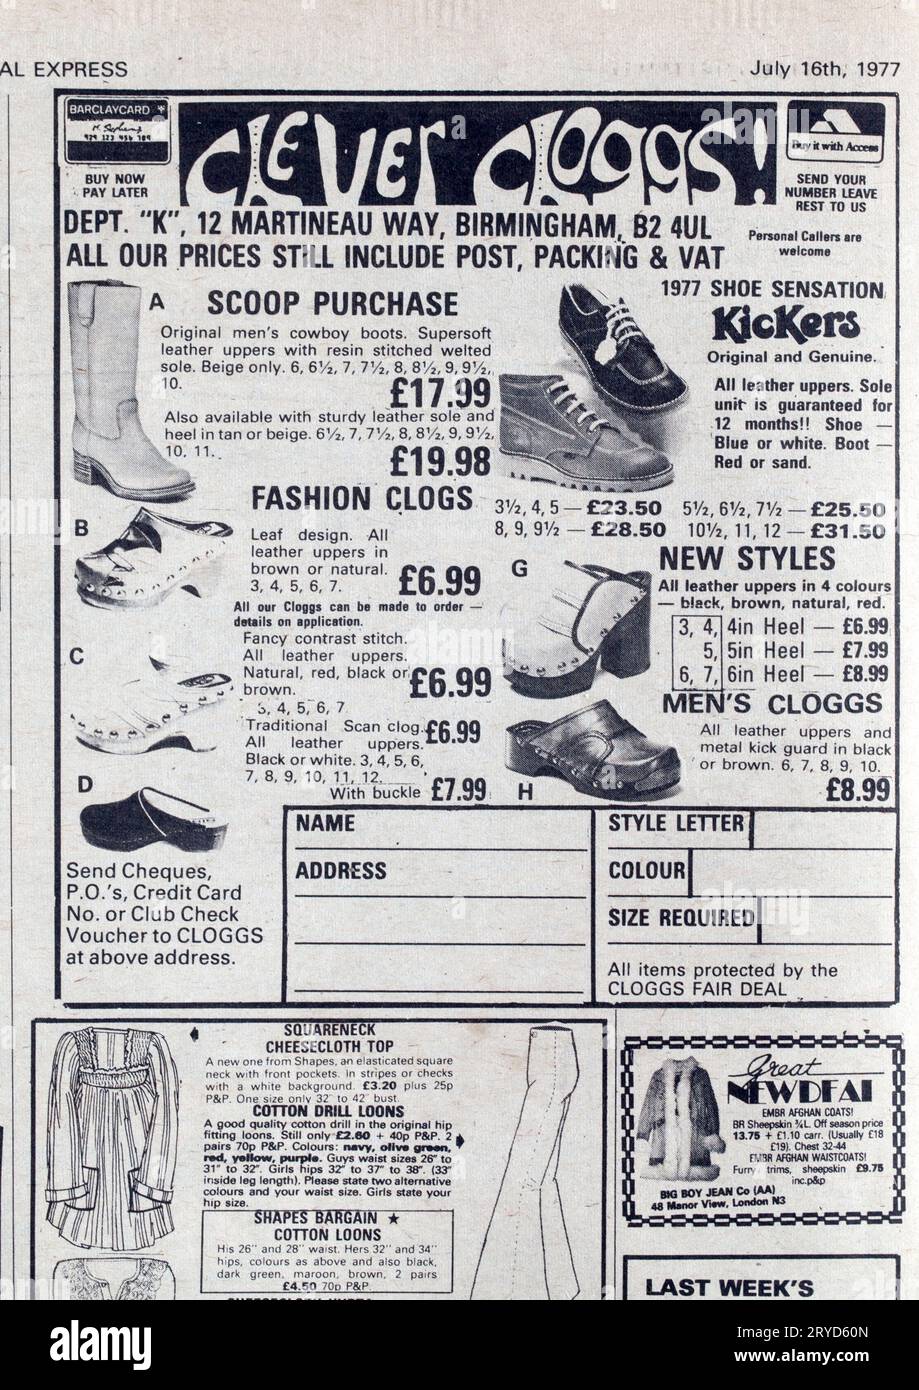 Publicité pour les vestes en cuir punk dans le numéro des années 1970 de NME New musical Express Music Paper Banque D'Images